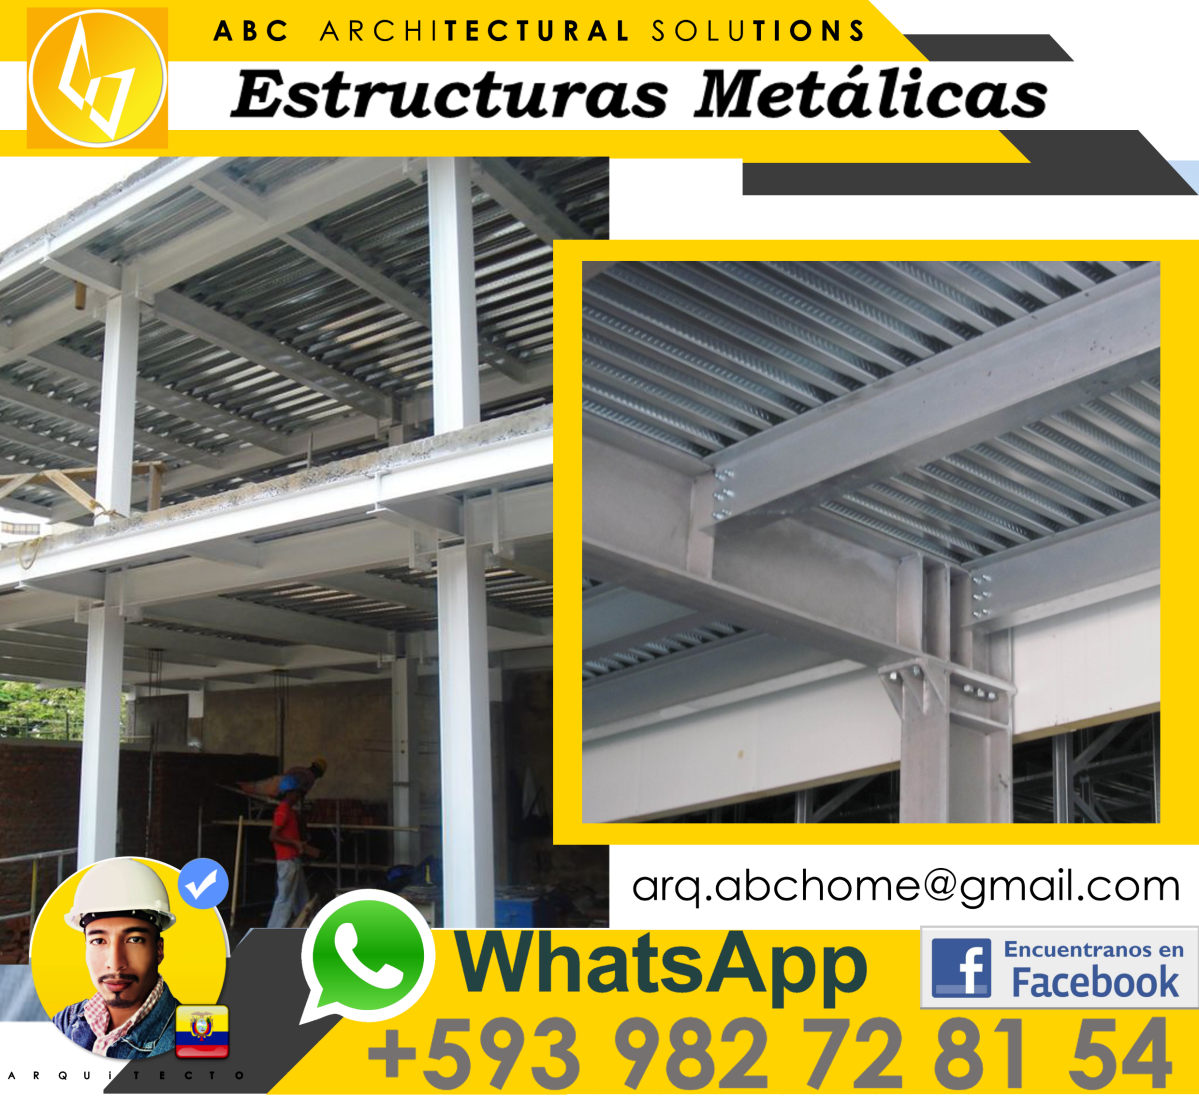 Casas estructuras metálicas en Manta – Ecuador | ingenieros y arquitectos de la ciudad de Manta | Manta – Manabi | Ecuador